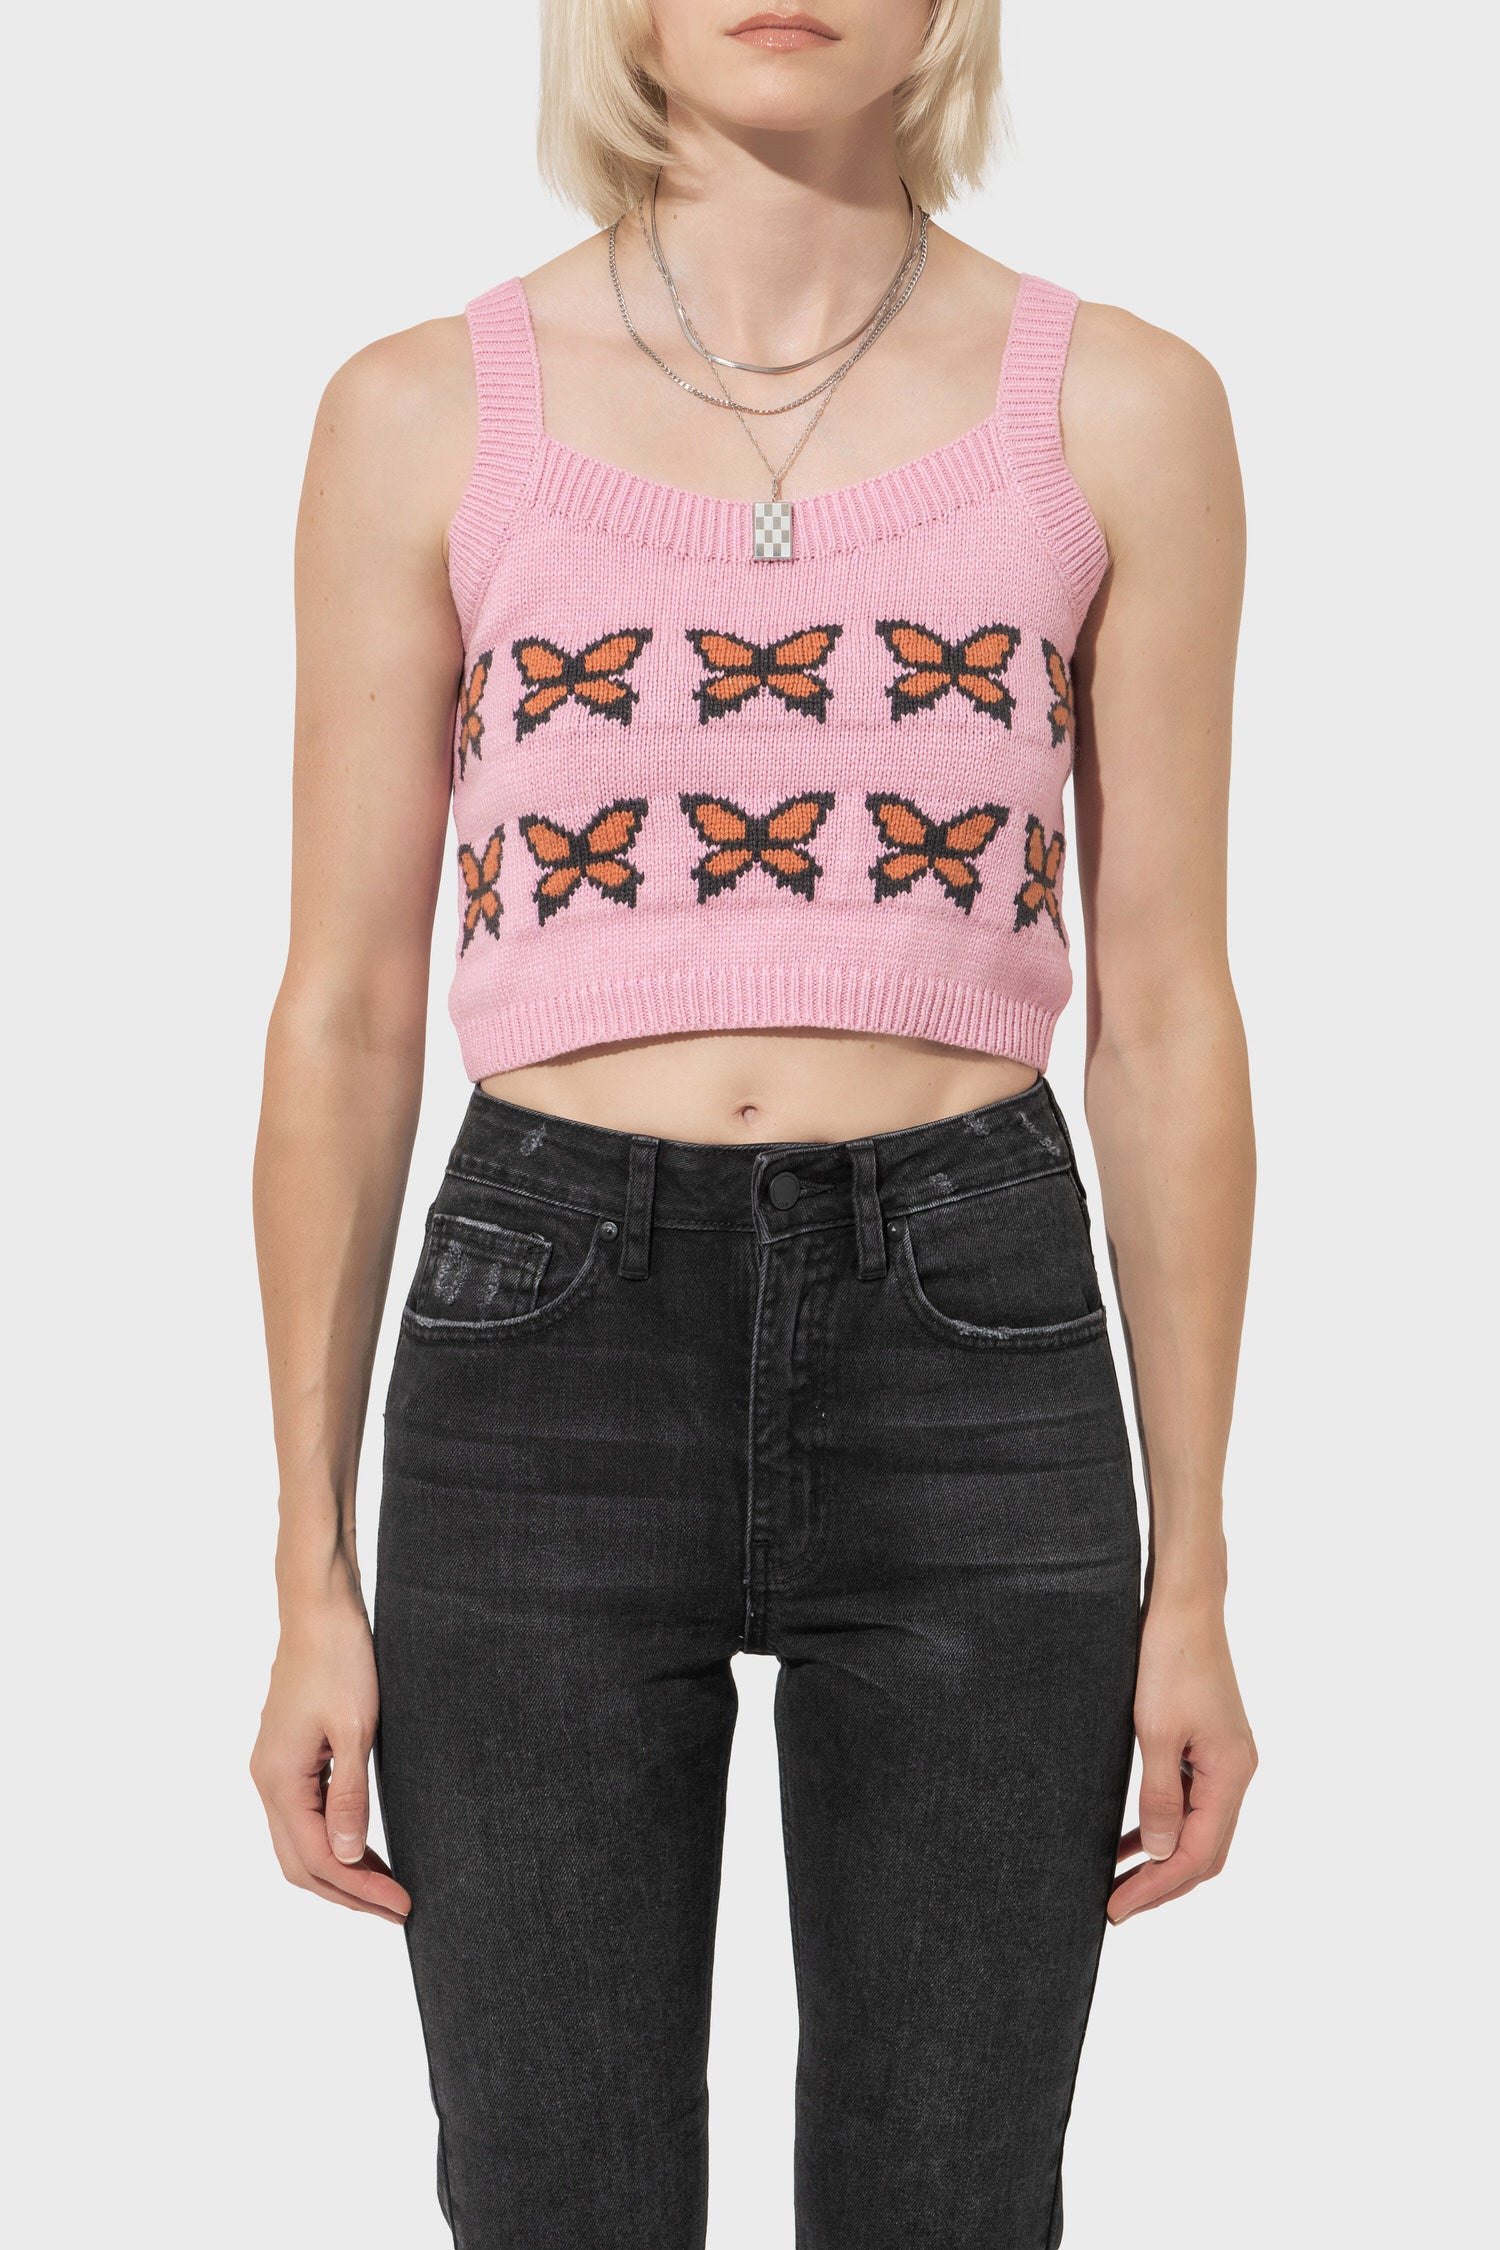 Women's Levi's Heaven Sweater Tank in Butterflies Prism